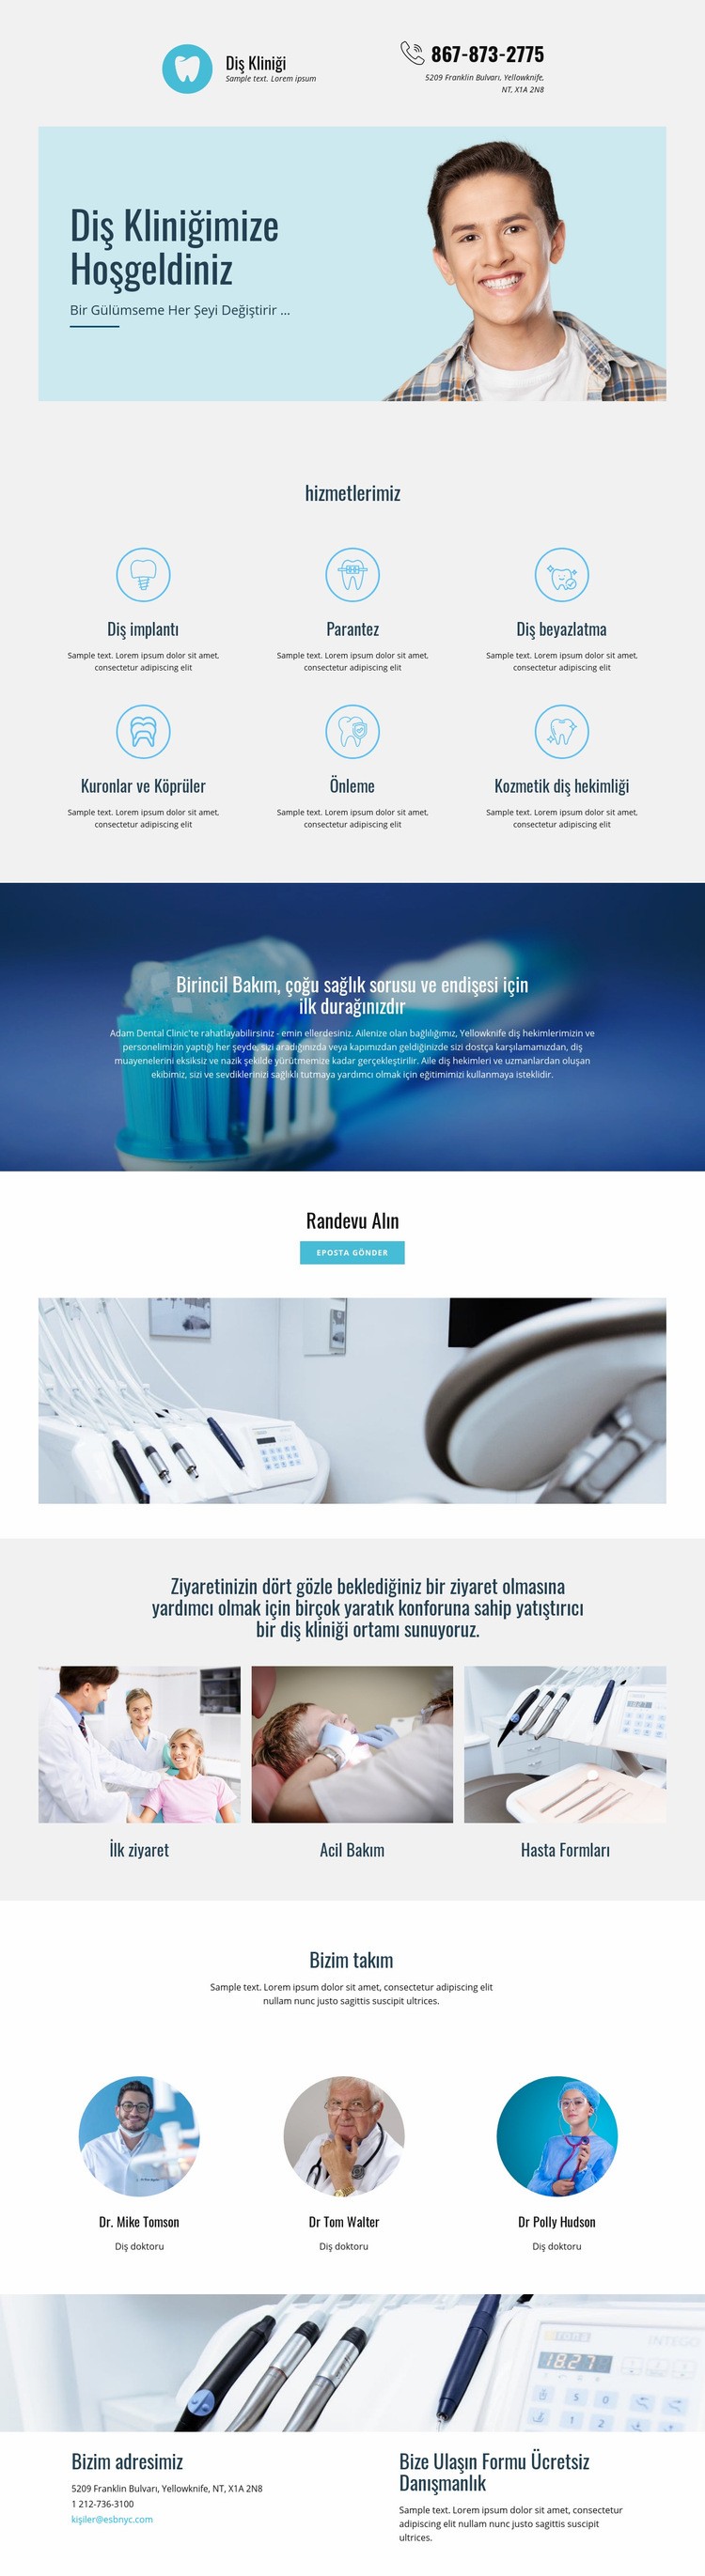 Diş hekimliği kliniği Açılış sayfası